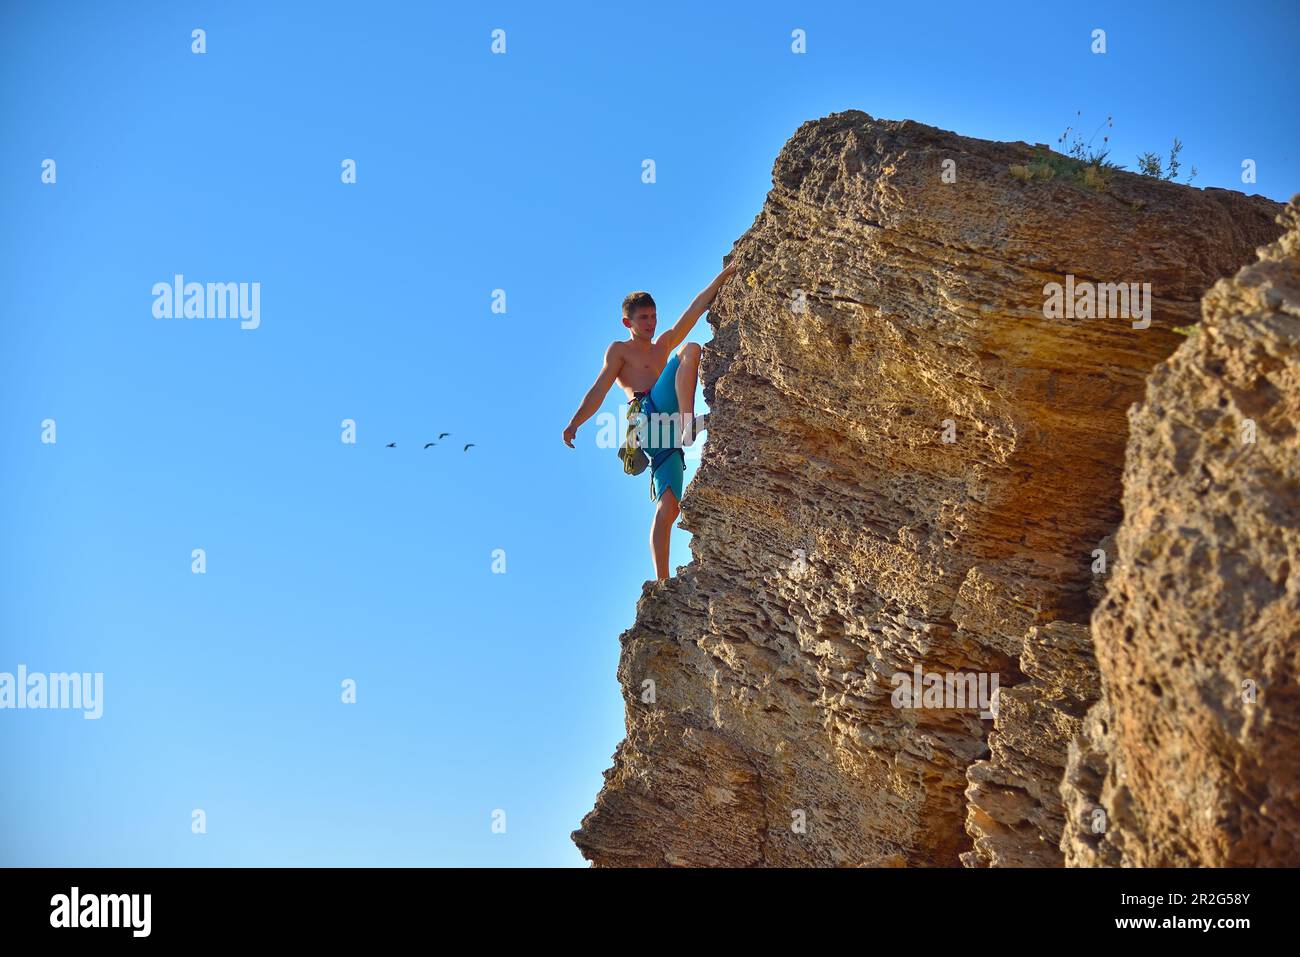 Extremkletterer mit Ausrüstung klettert auf einen Felsen Stockfoto